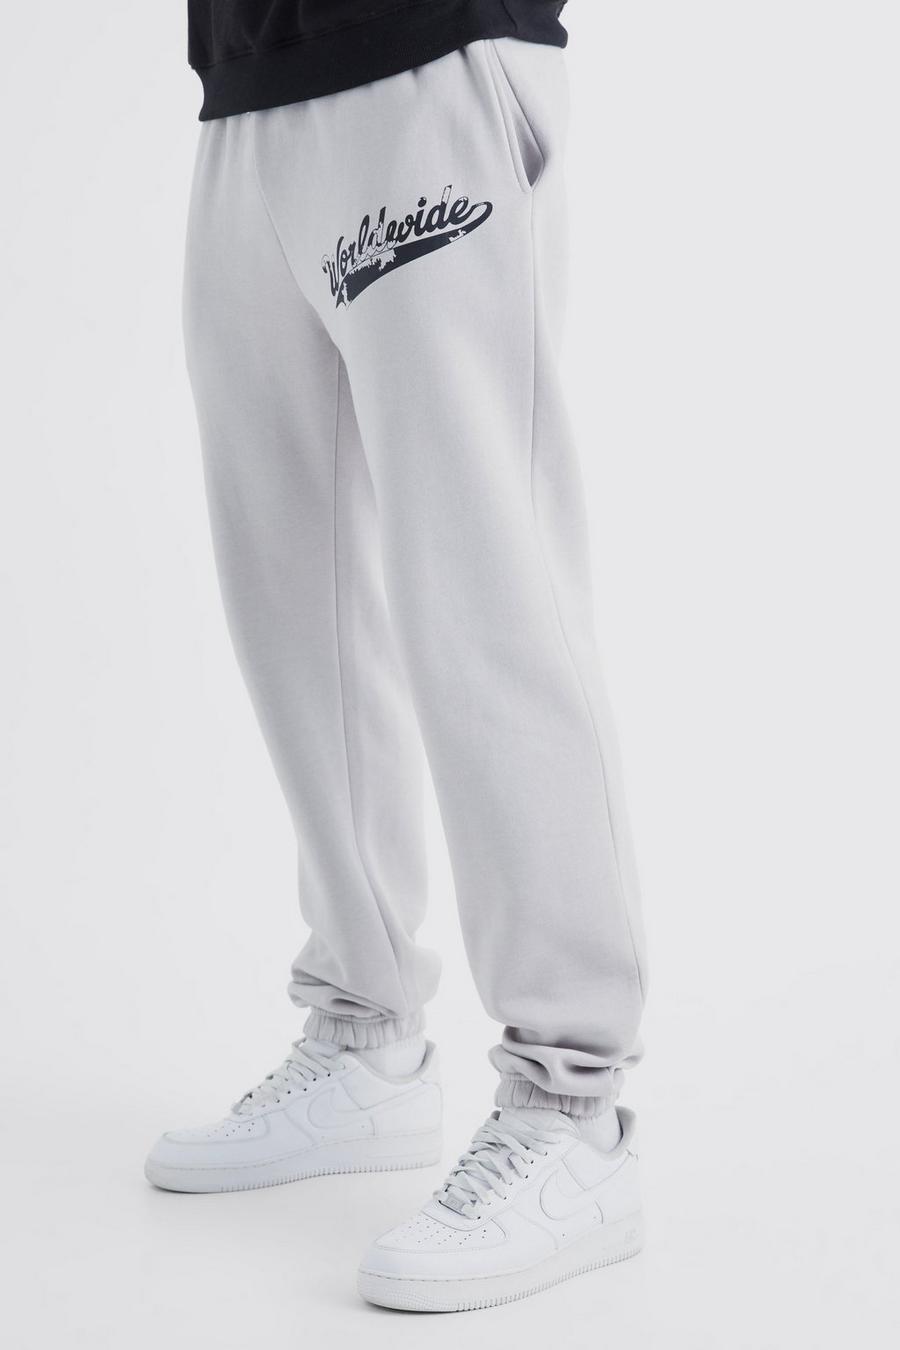 Pantaloni tuta Tall con stampa Worldwide vintage con spacco sul fondo, Light grey